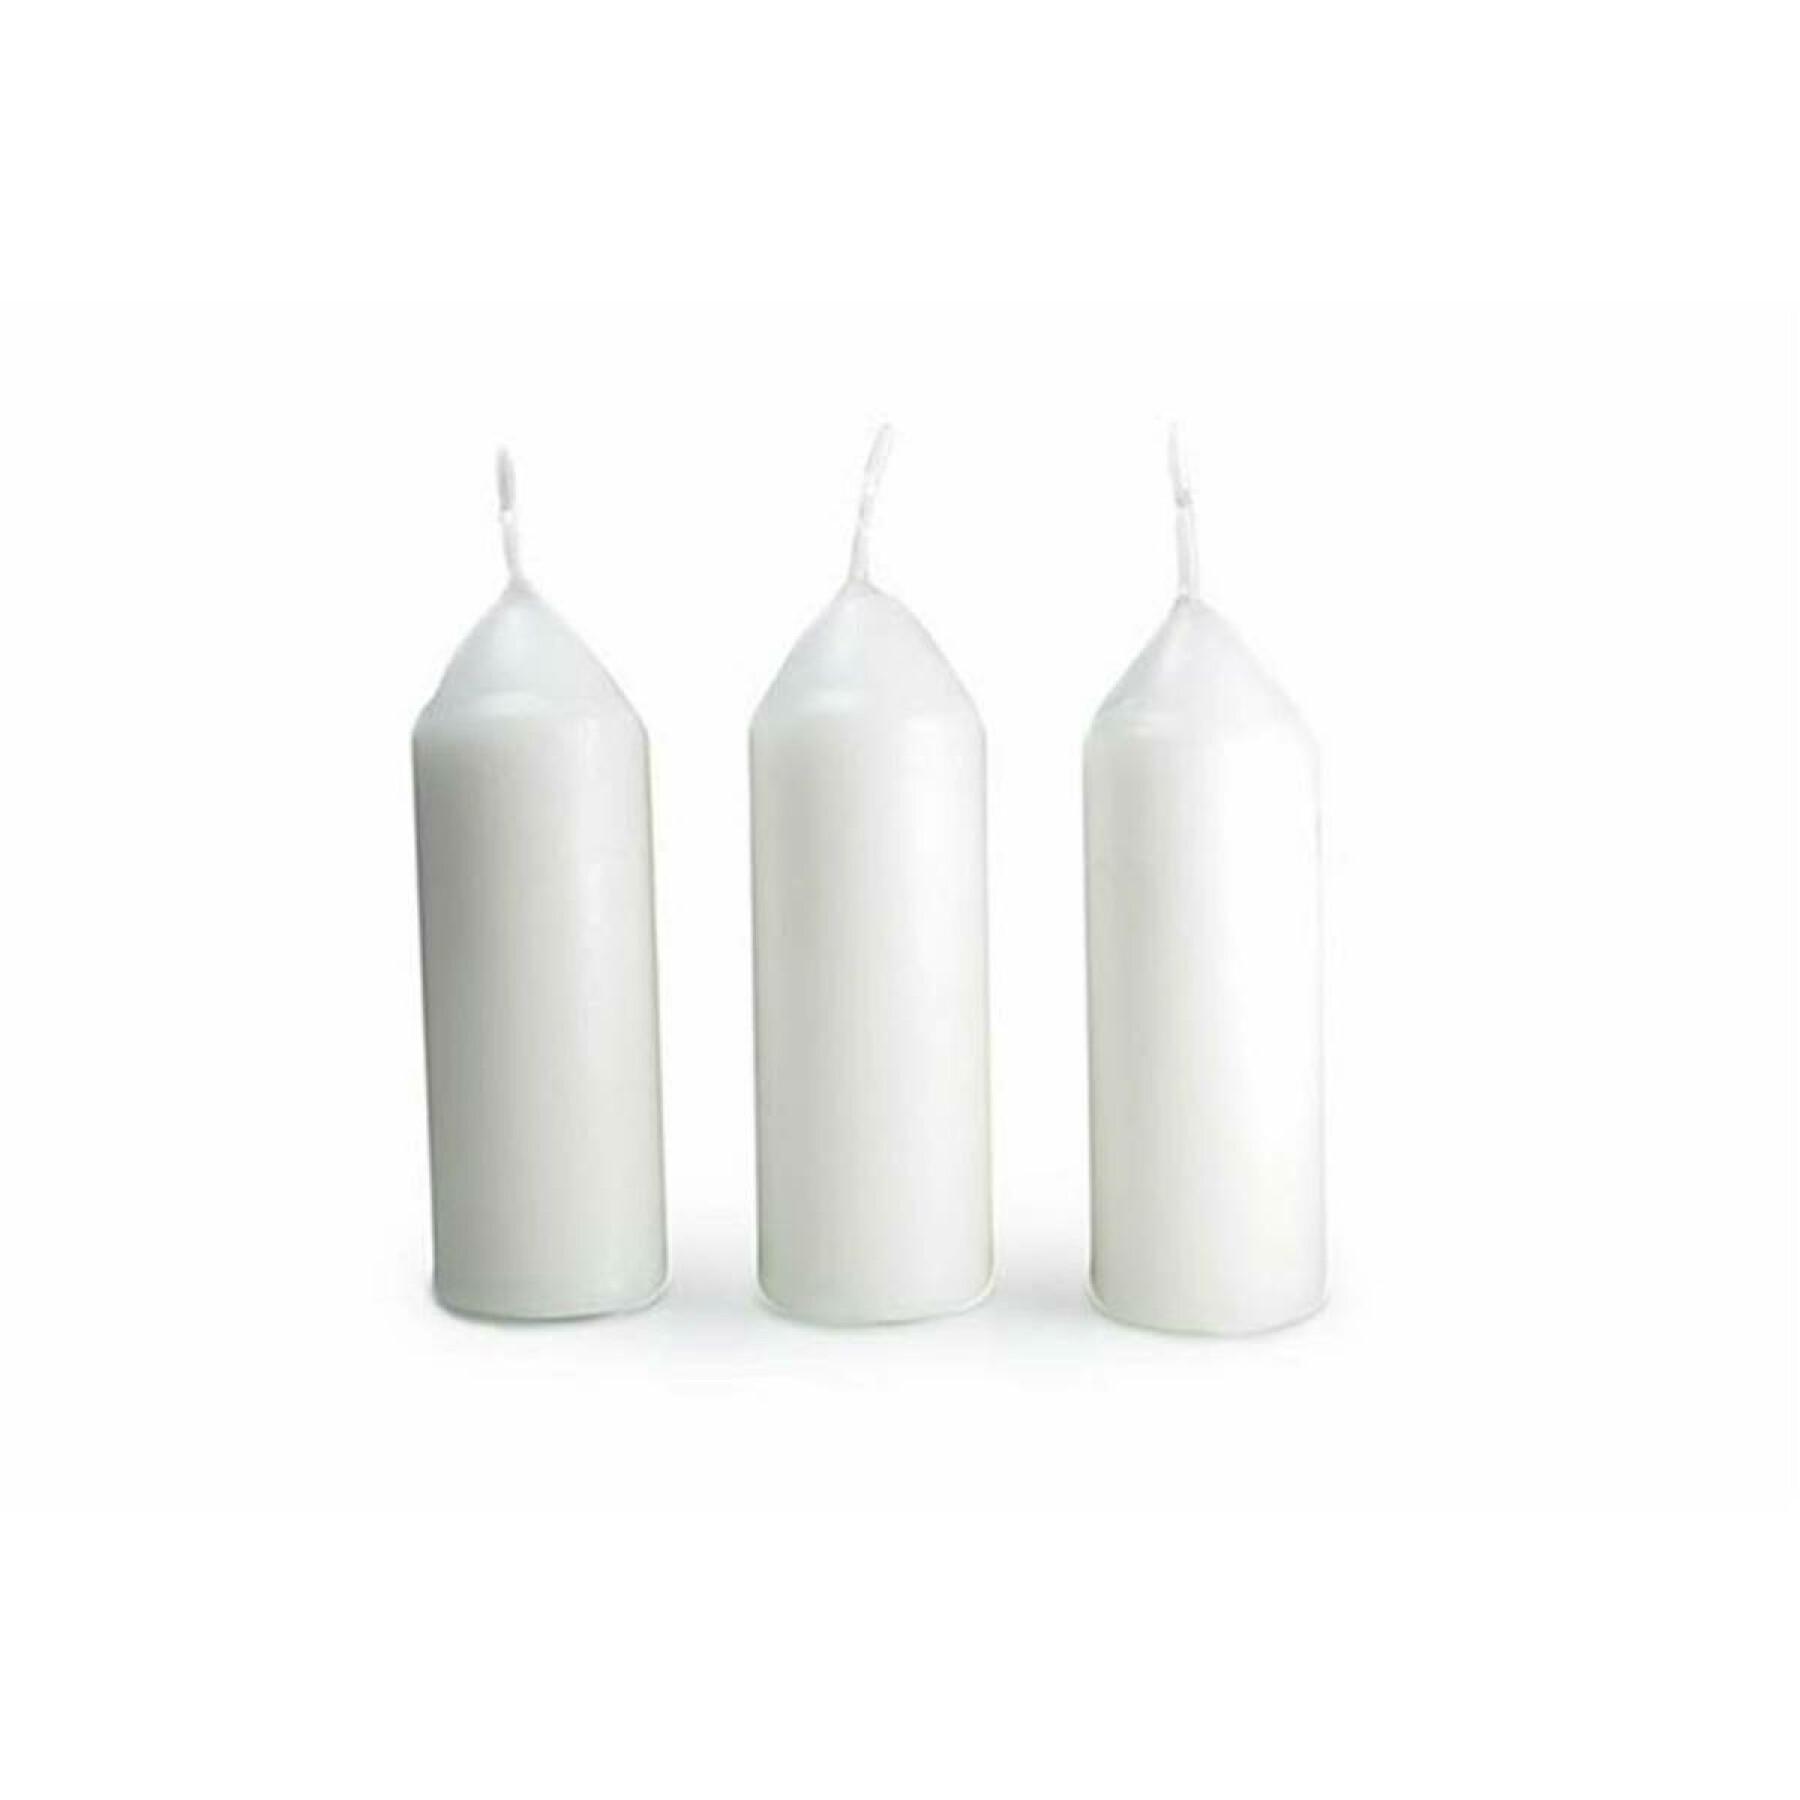 3 velas de parafina blanca para la linterna original 9 horas cada una Uco